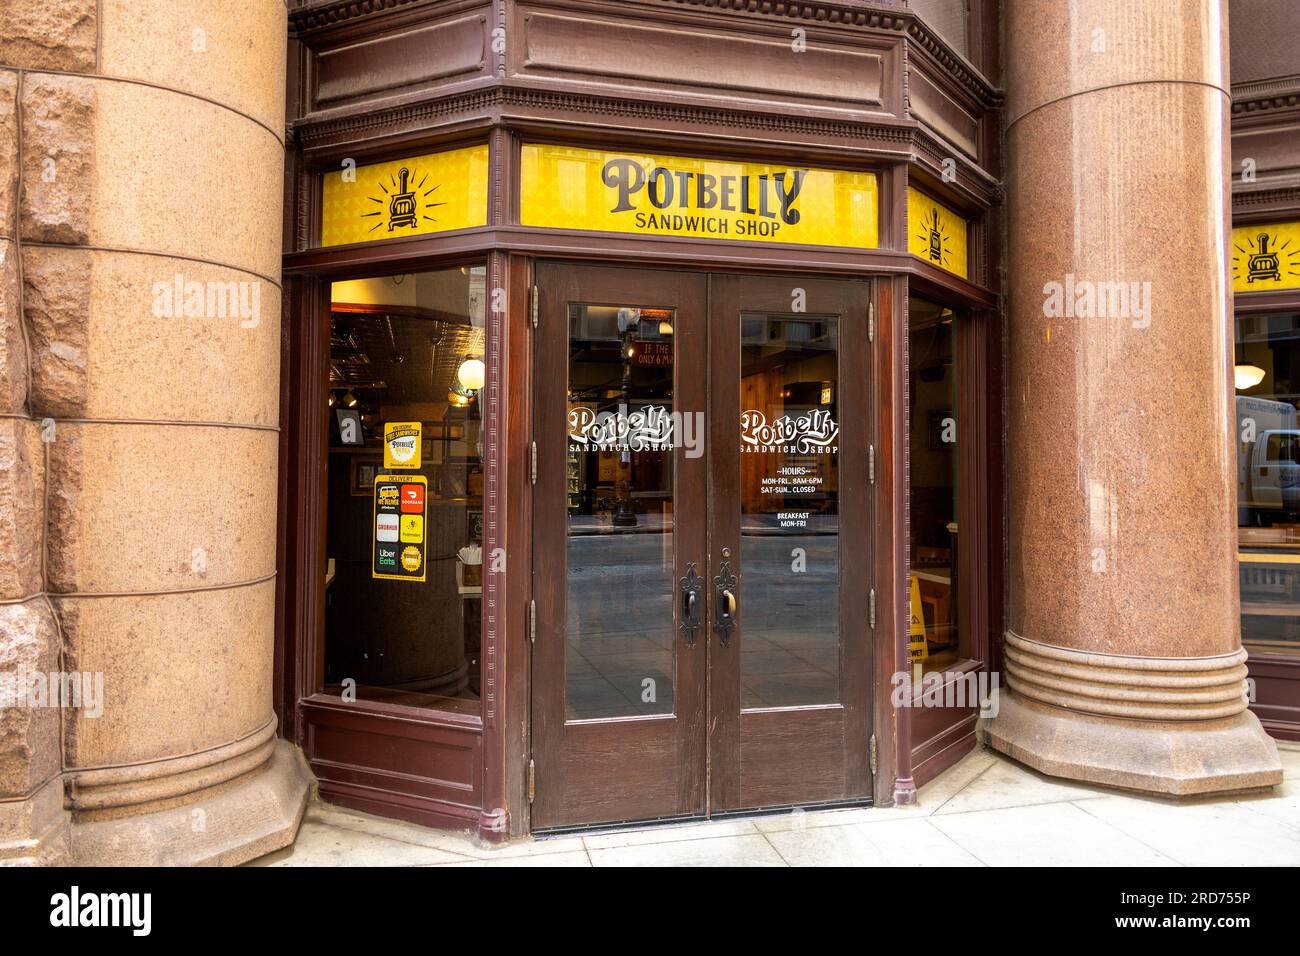 Potbelly Sandwich Shop Store Front au centre-ville de Chicago, États-Unis, chaîne de restaurants American Fast Casual, servant des sandwichs grillés au four Banque D'Images